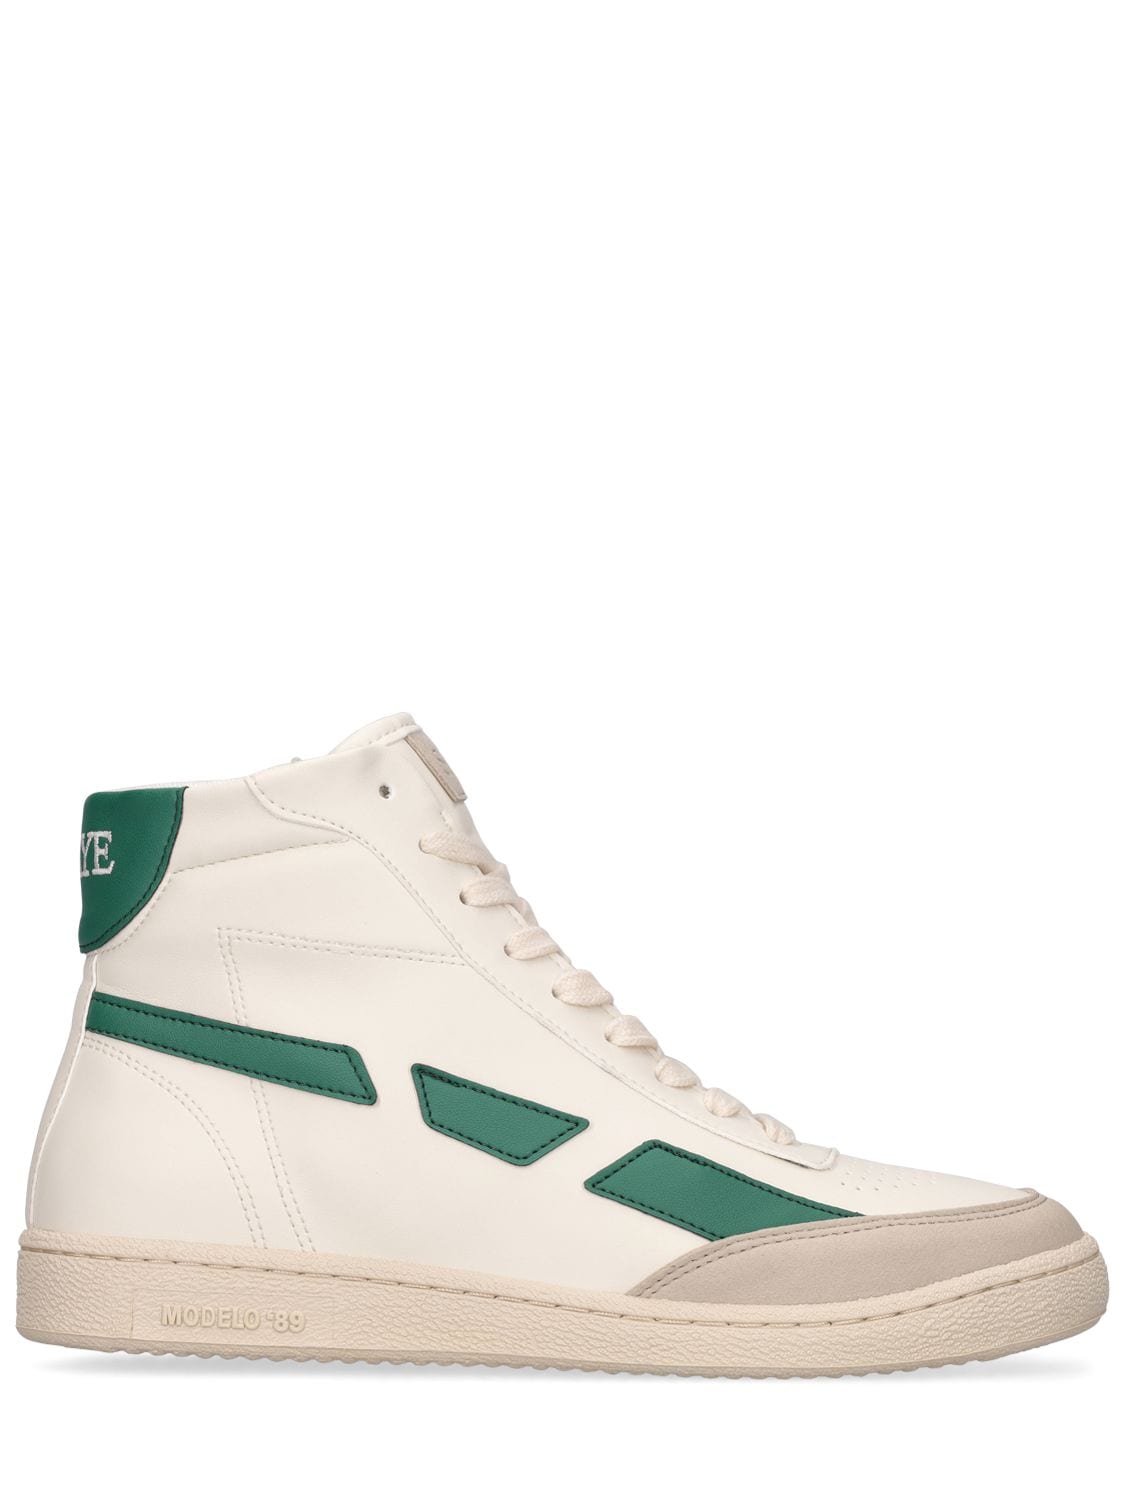 Saye Modelo '89 Hi Vegan Sneakers In Dark Green At Urban Outfitters